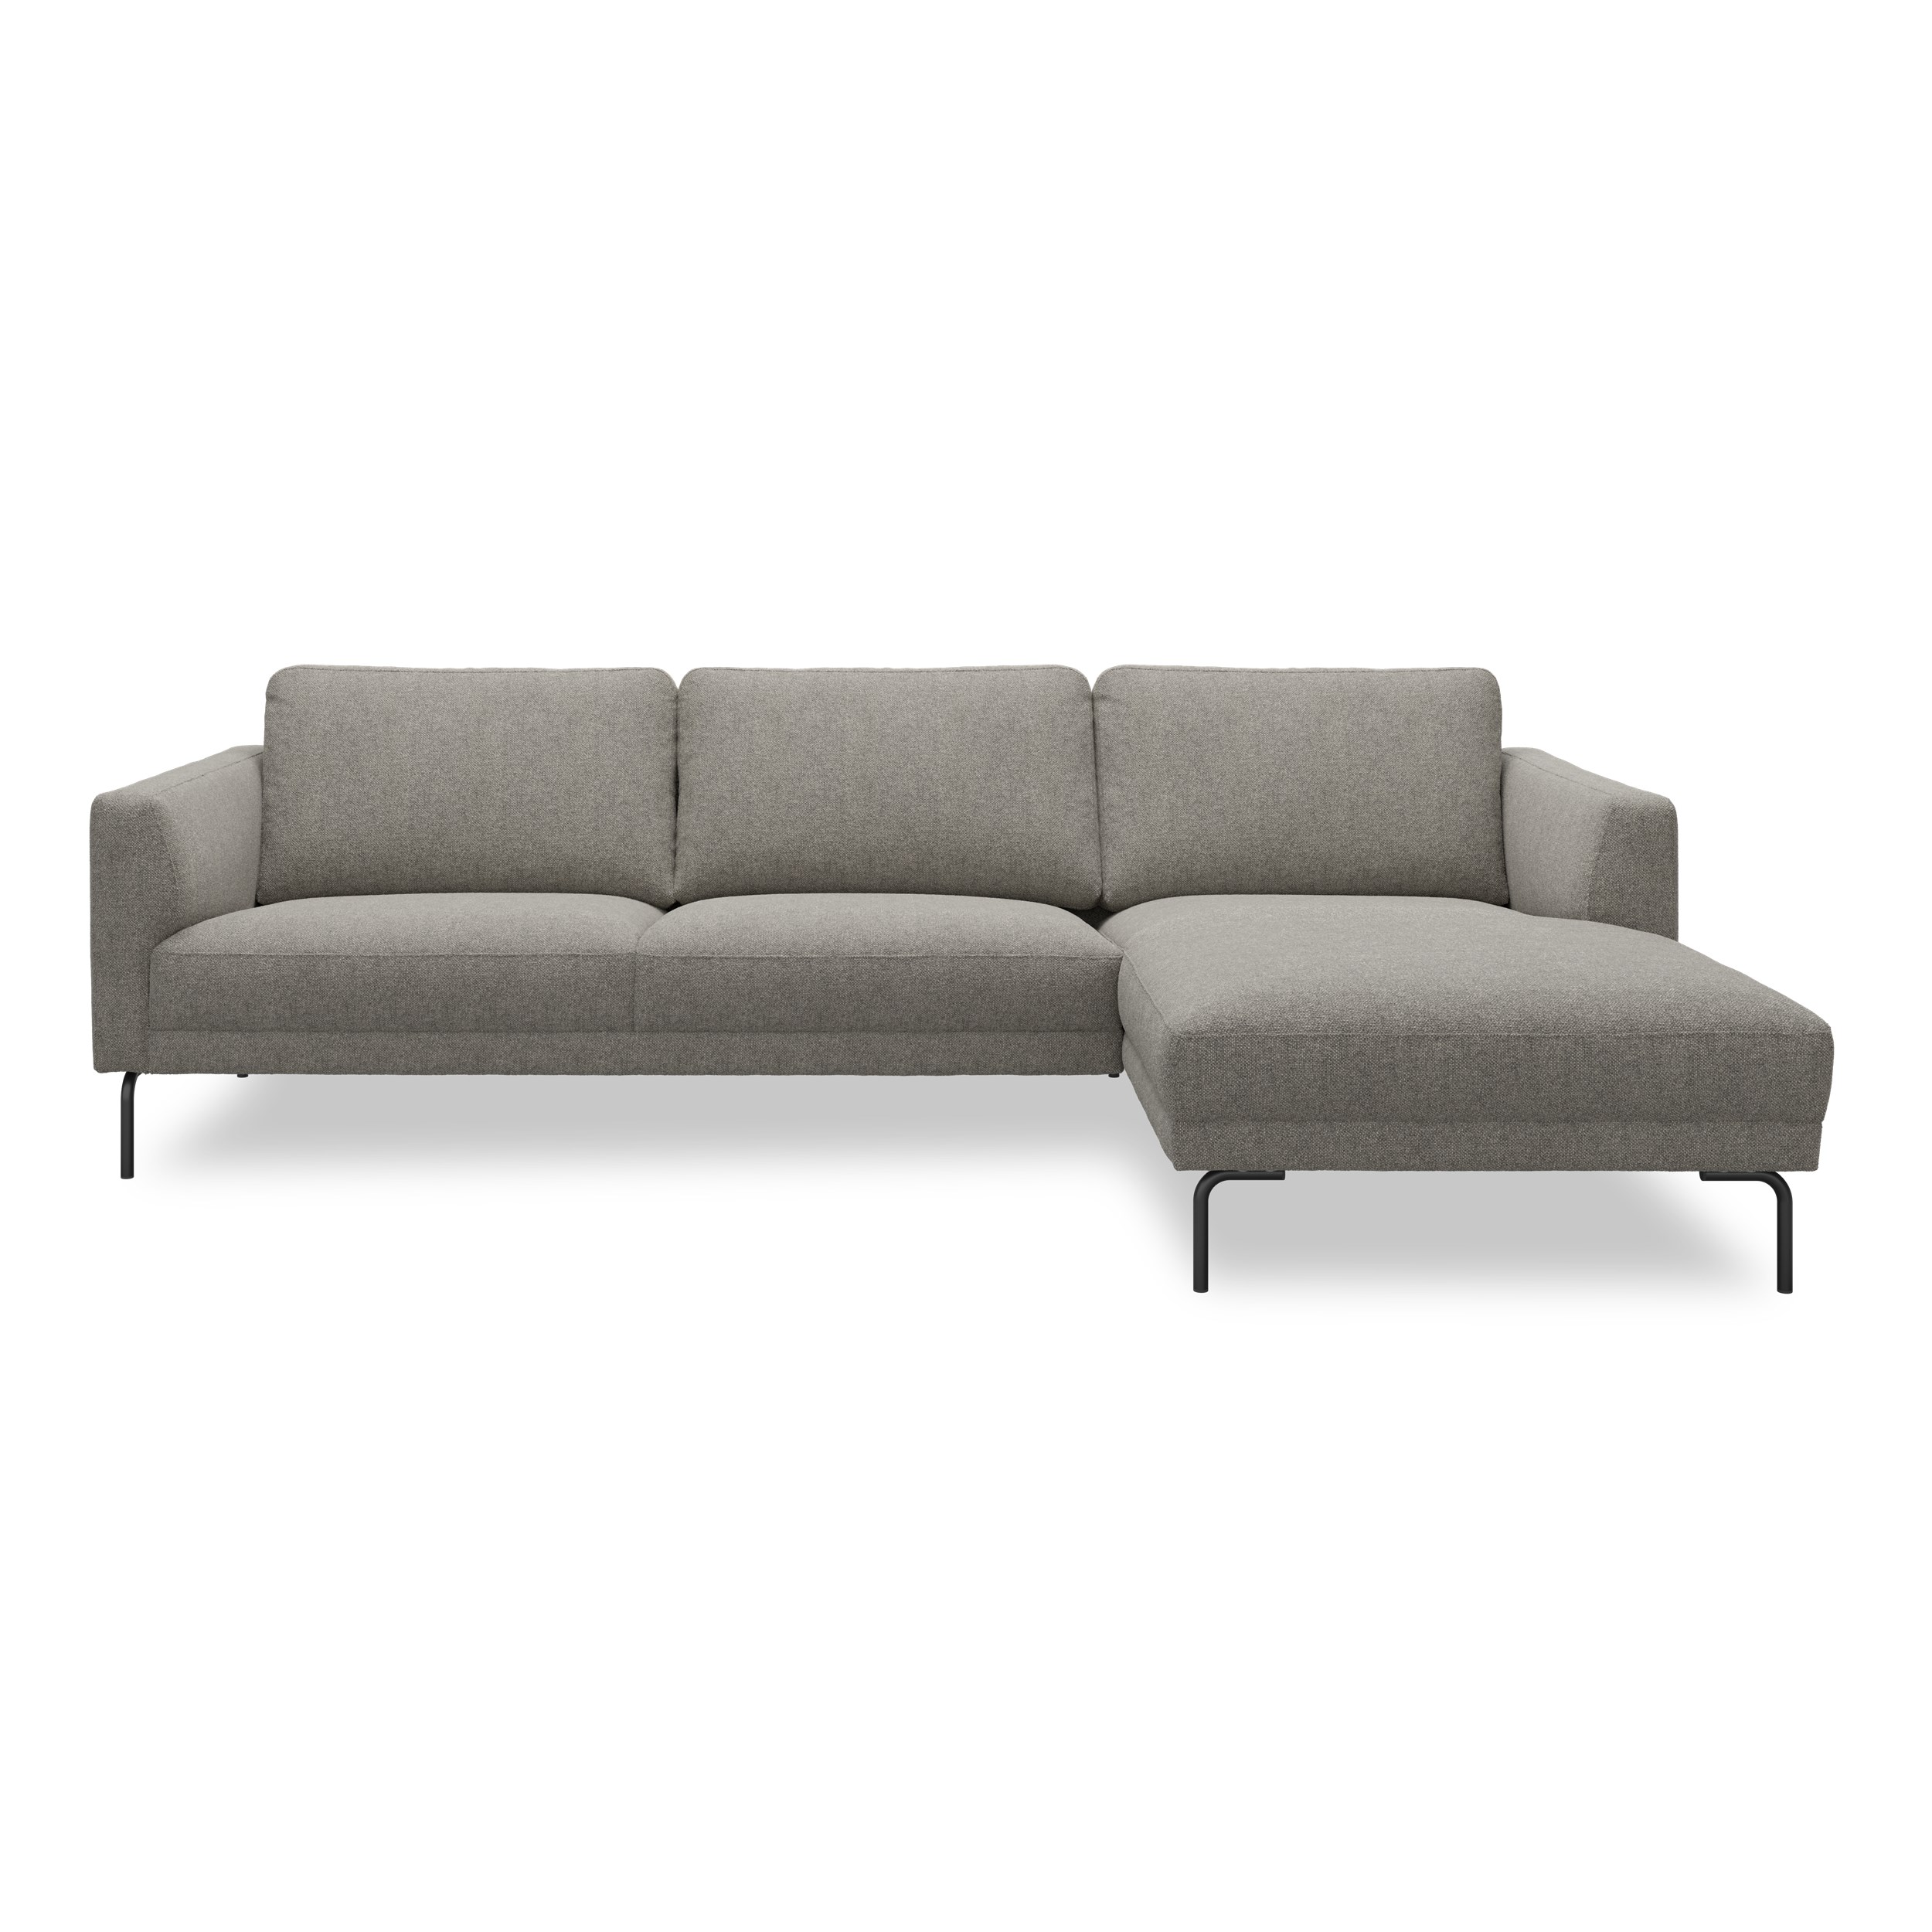 Springfield højrevendt sofa med chaiselong 